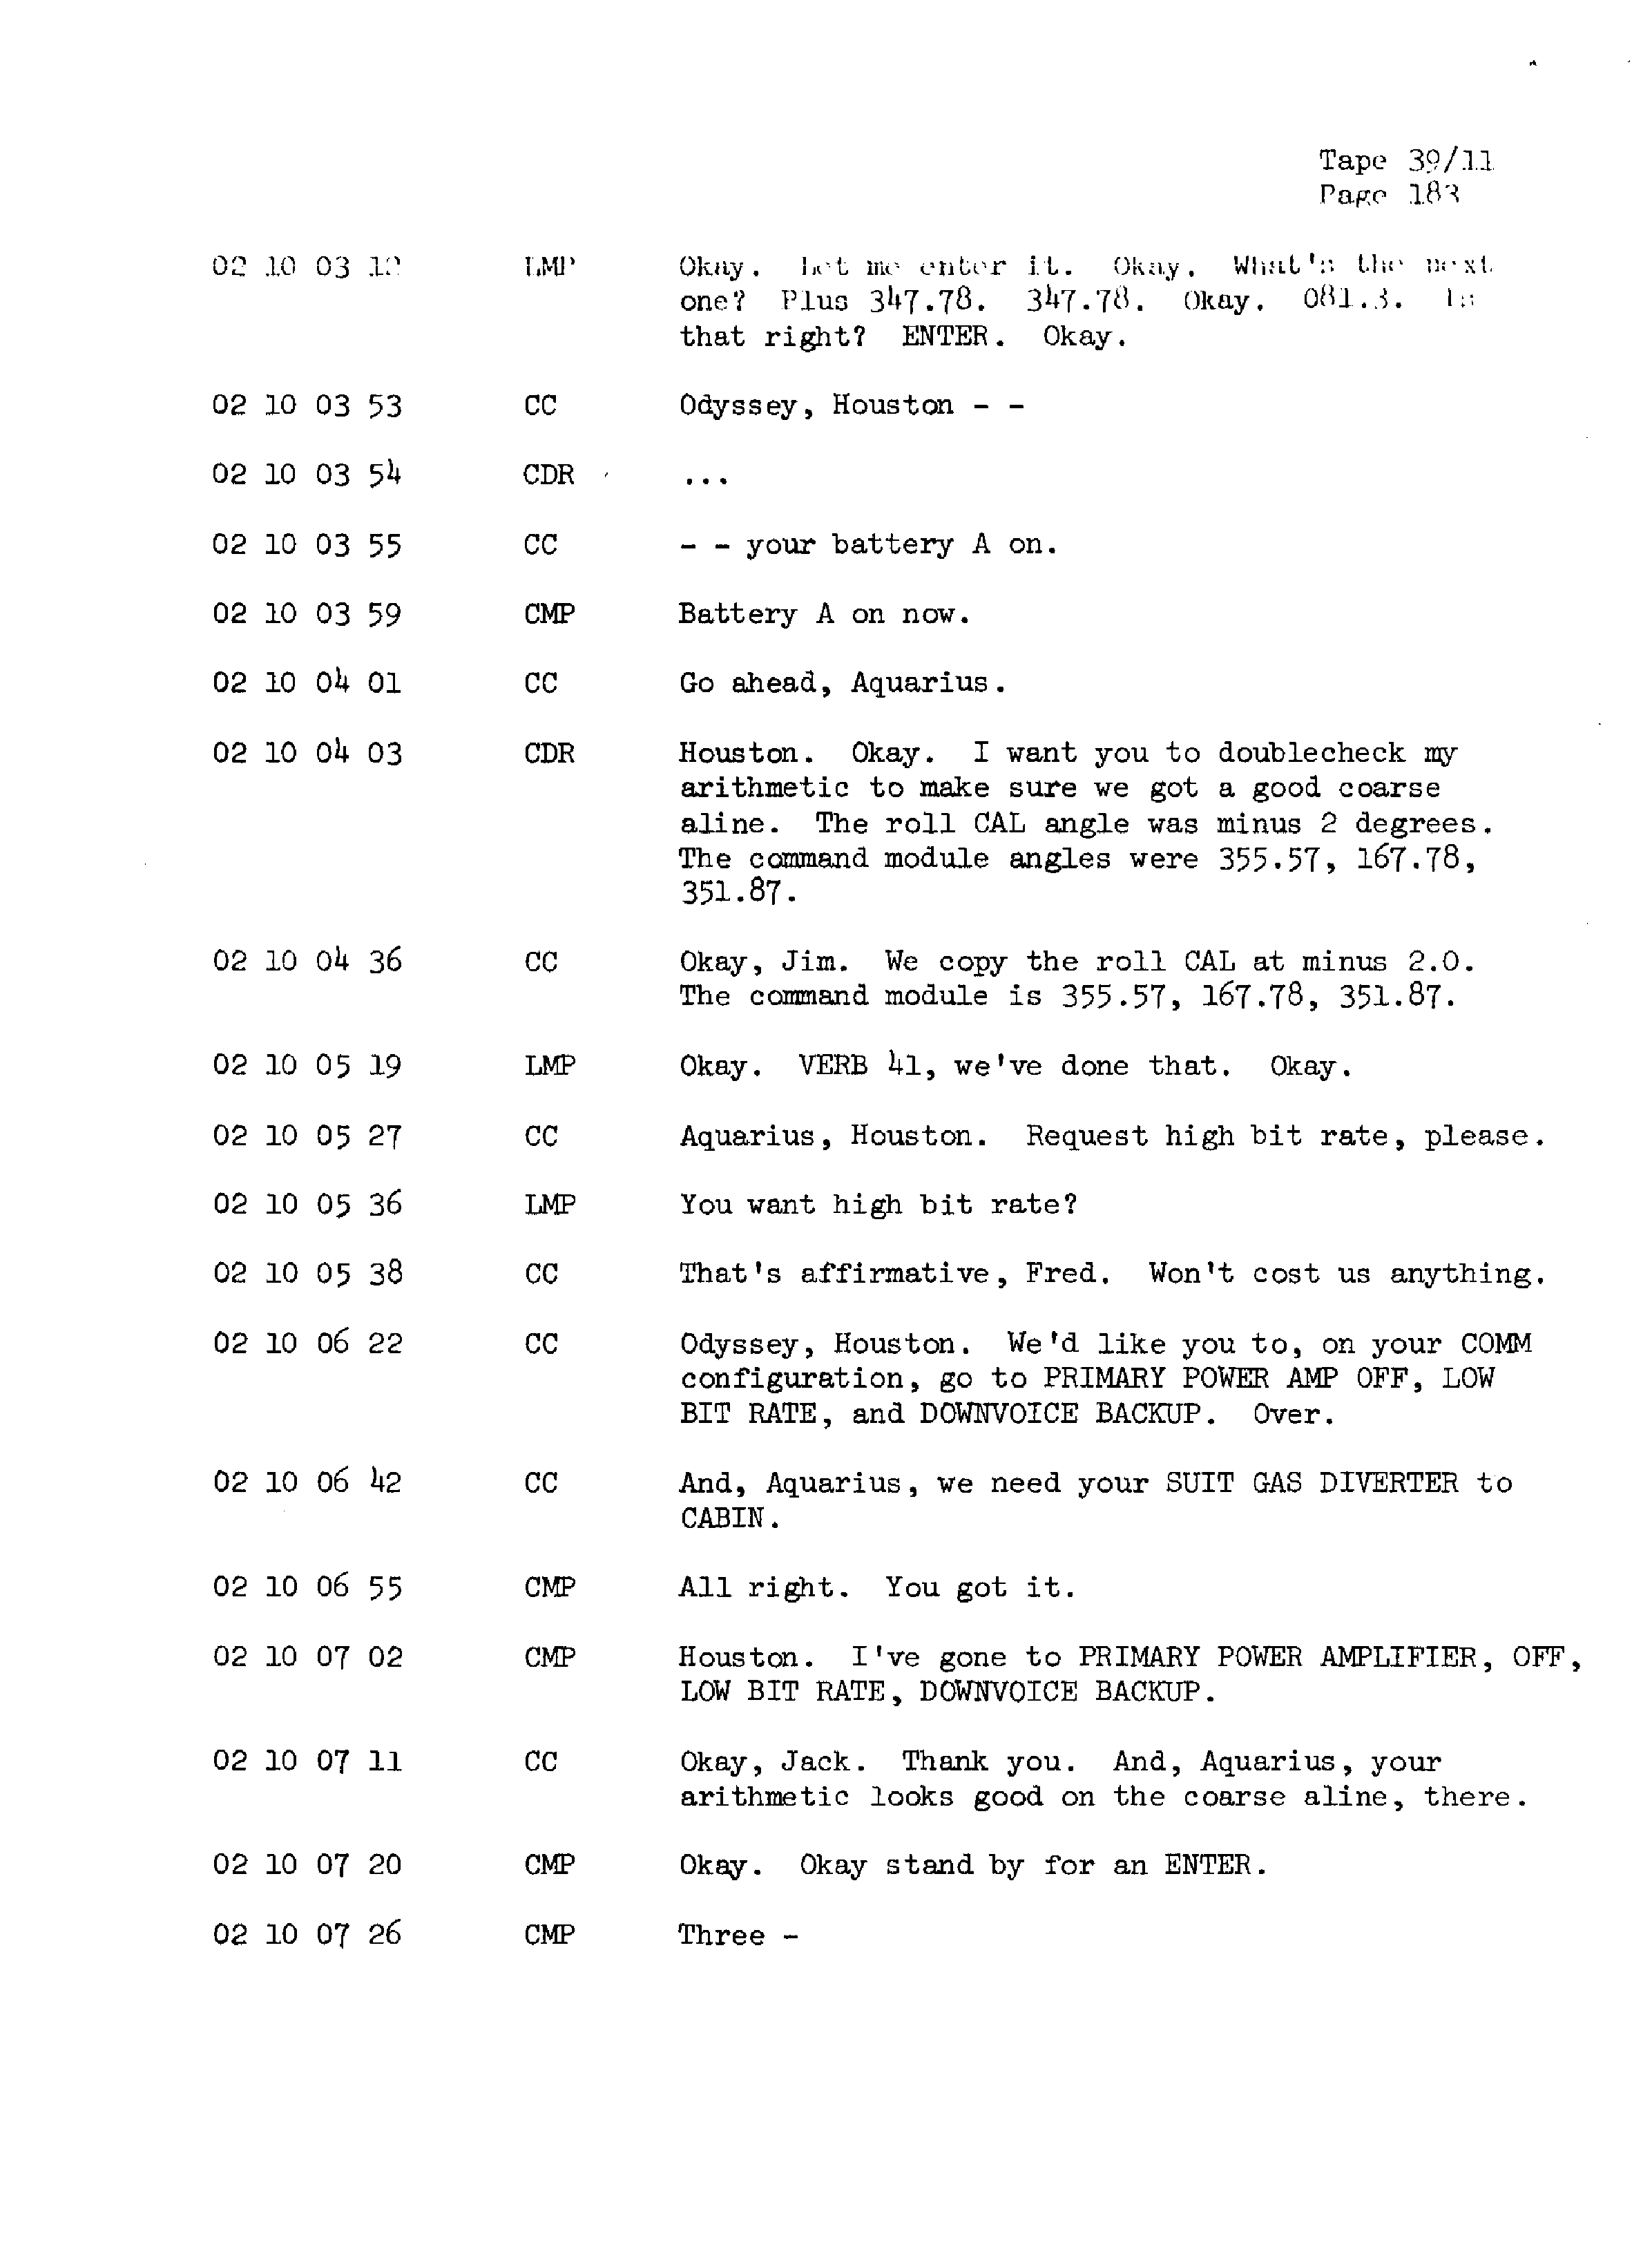 Page 190 of Apollo 13’s original transcript